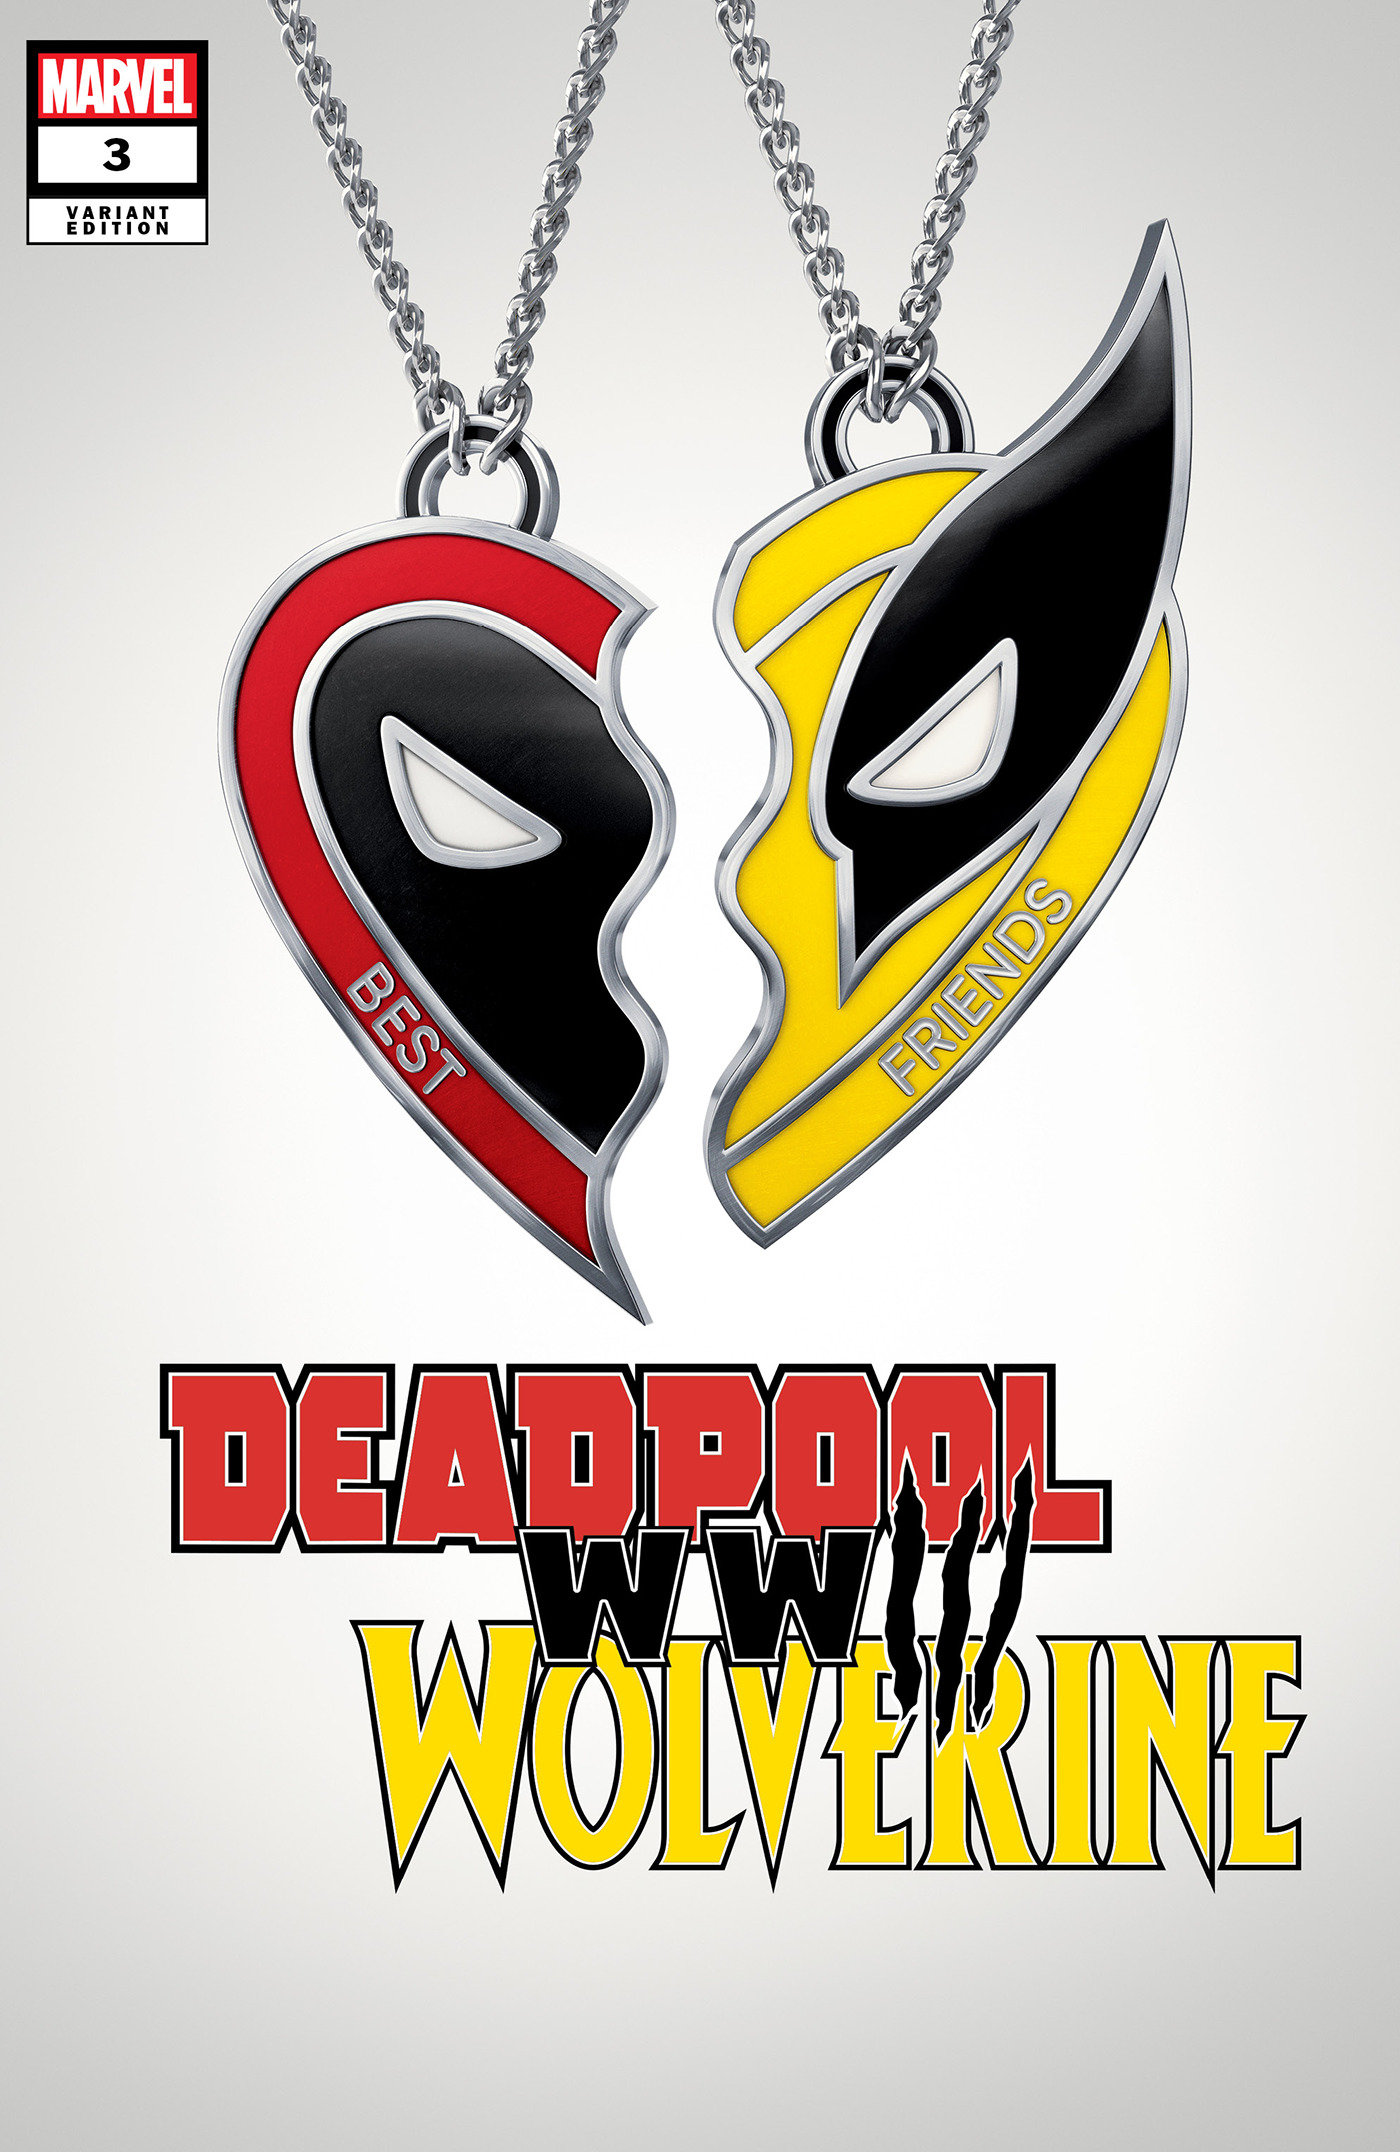 Deadpool Wolverine WWIII #3 Movie Variant